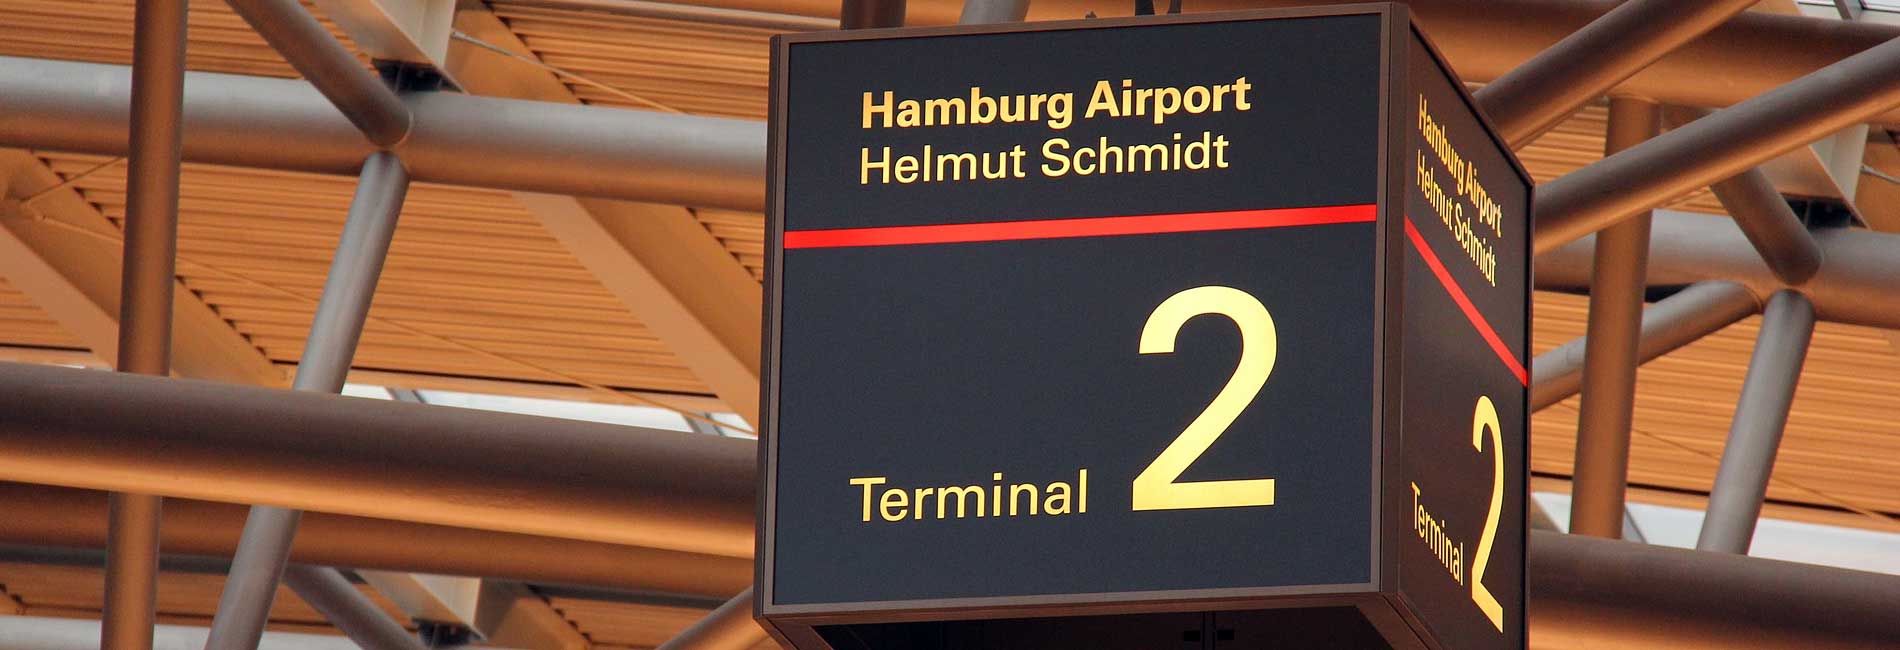 Terminal 2 of Airport Hamburg